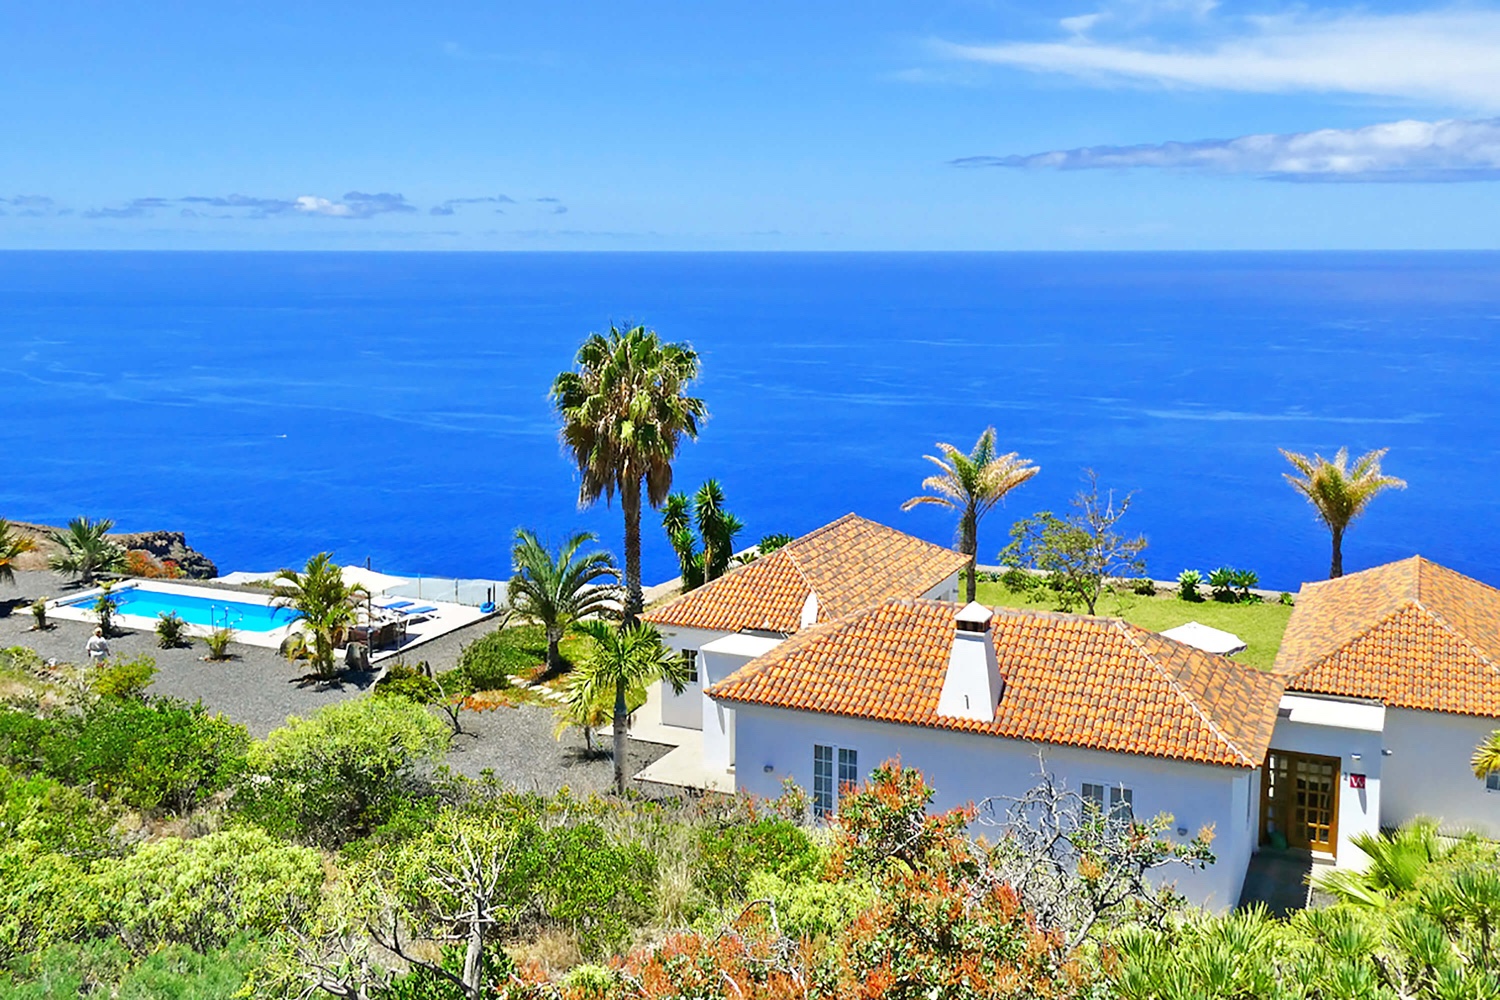 Muy bonita casa moderna con piscina privada e impresionantes vistas panorámicas del Océano Atlántico. La casa de vacaciones muy bien equipada es ideal para unas vacaciones en La Palma con todas las comodidades.